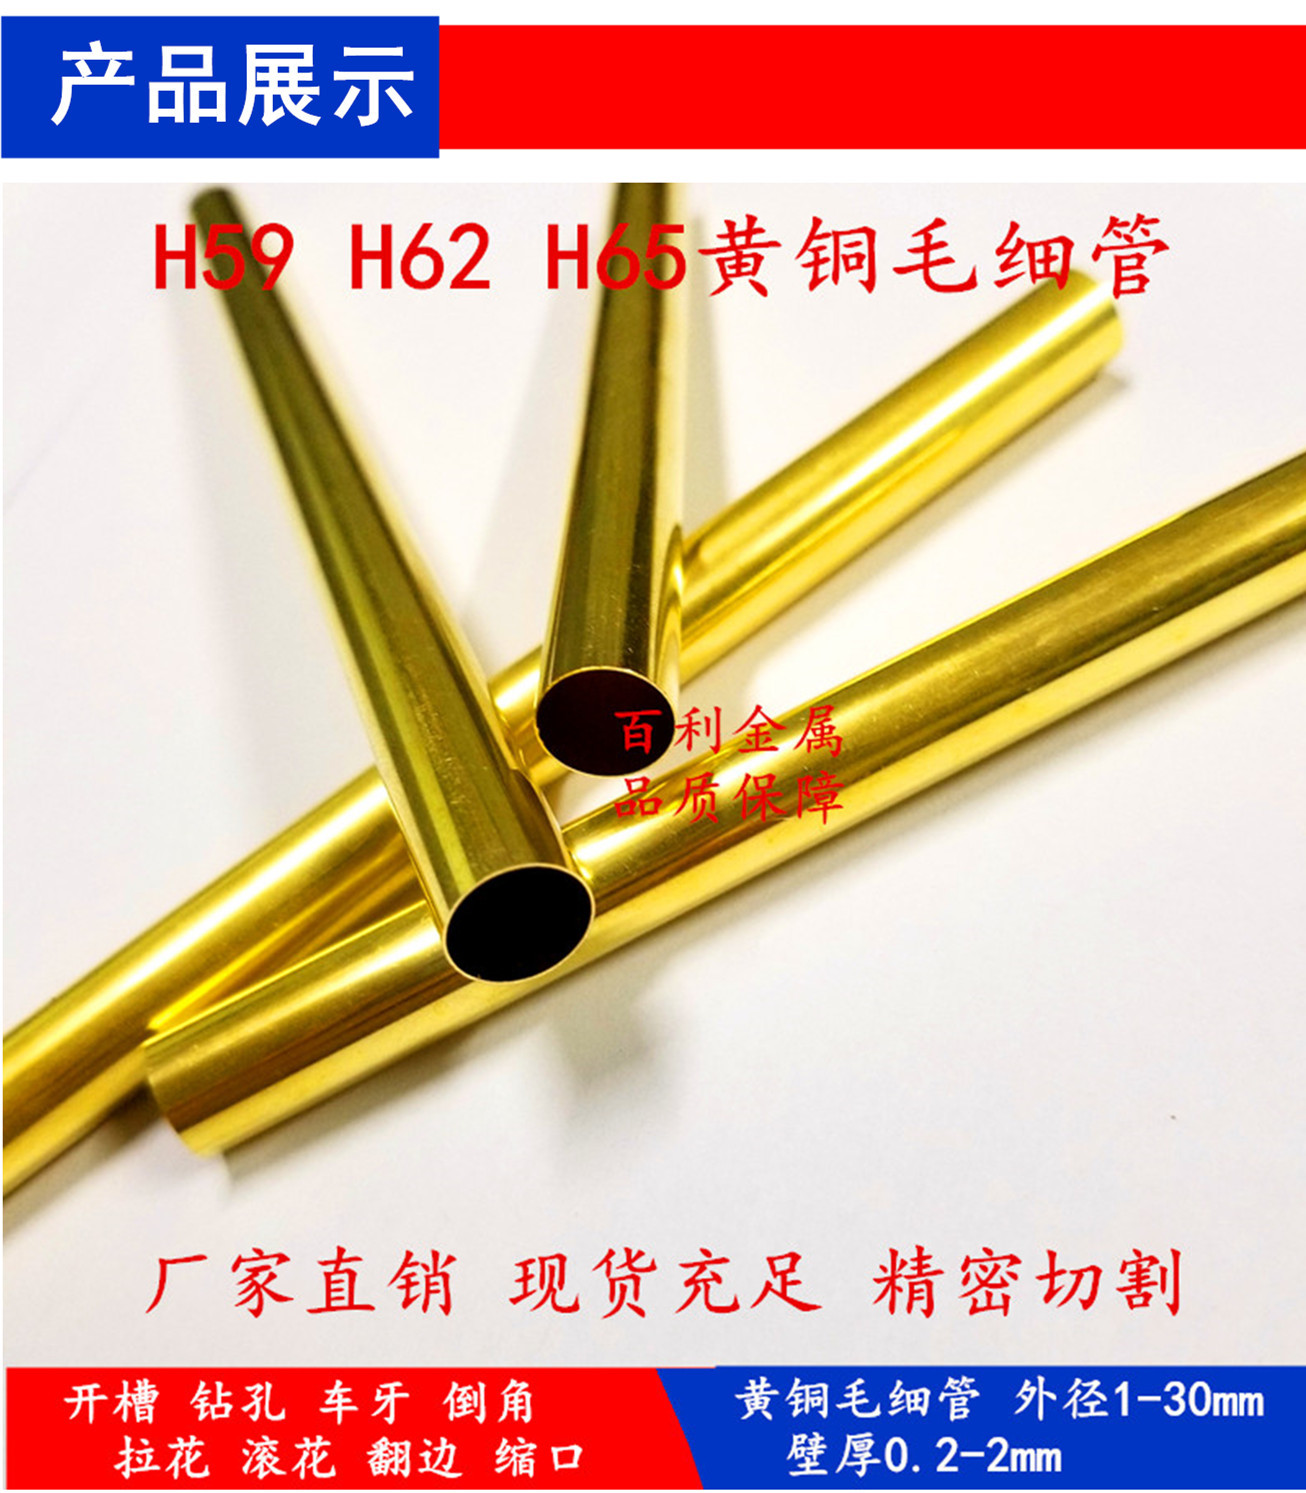 H65 H62黄铜毛细管 黄铜棒 黄铜带 黄铜板 厂家直销 规格齐全示例图9